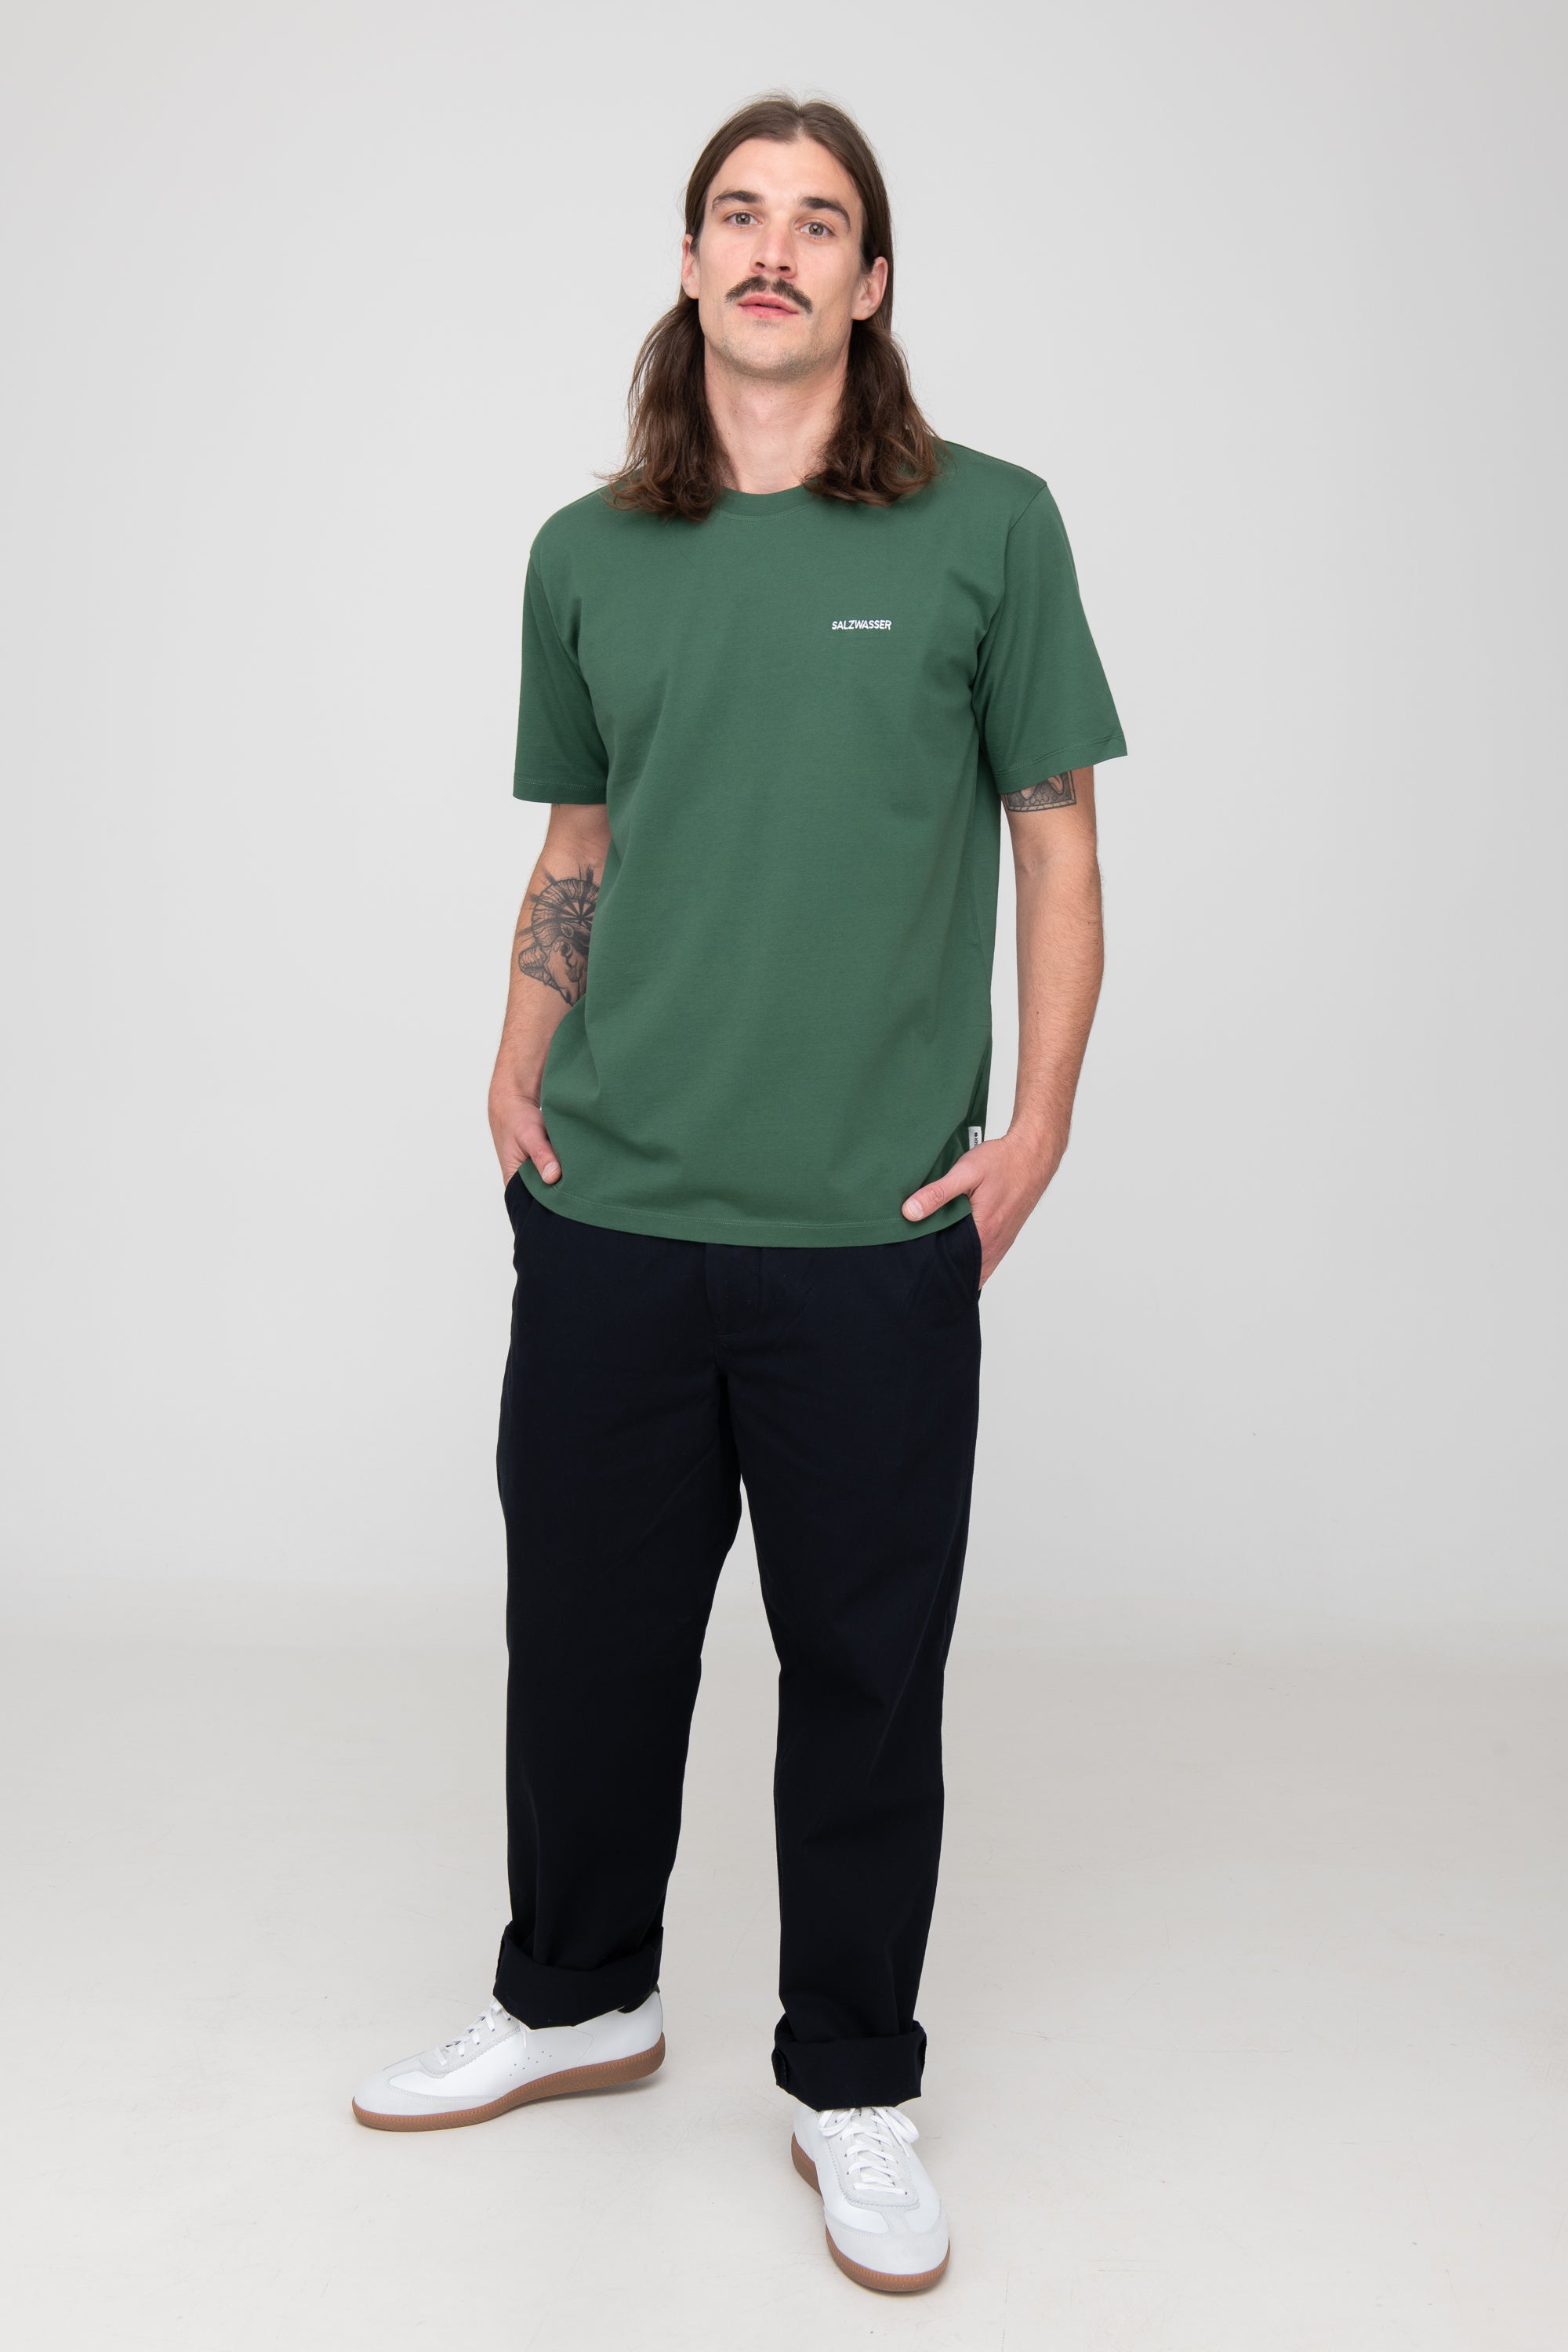 Mann trägt GOTS-zertifiziertes grünes T-Shirt von SALZWASSER